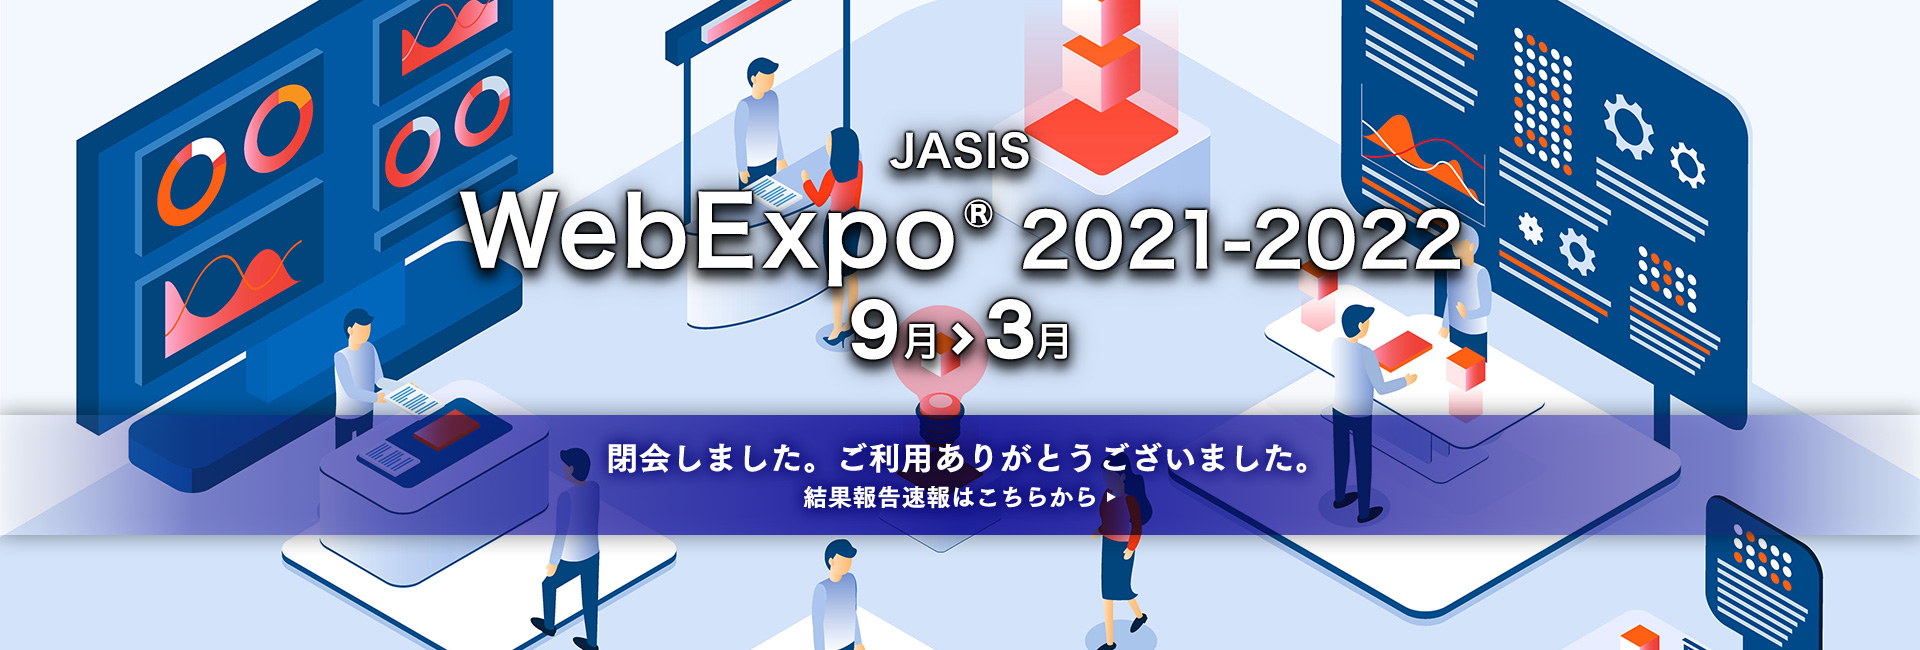 JASIS WebExpo 2021-2022